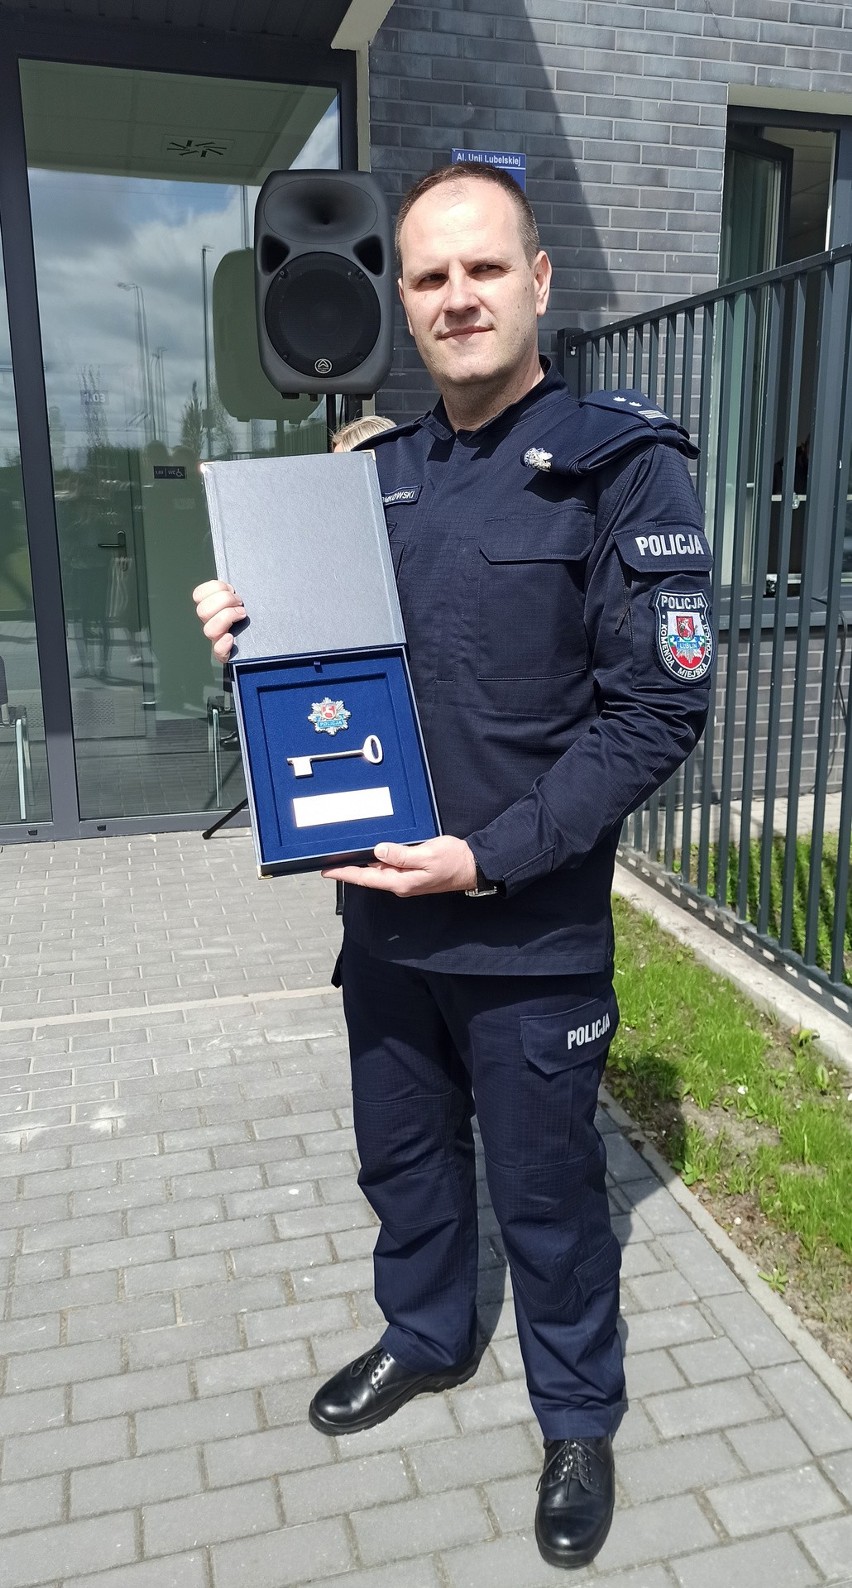 Policjanci z I komisariatu w Lublinie zmienili siedzibę. Nowa placówka już otwarta